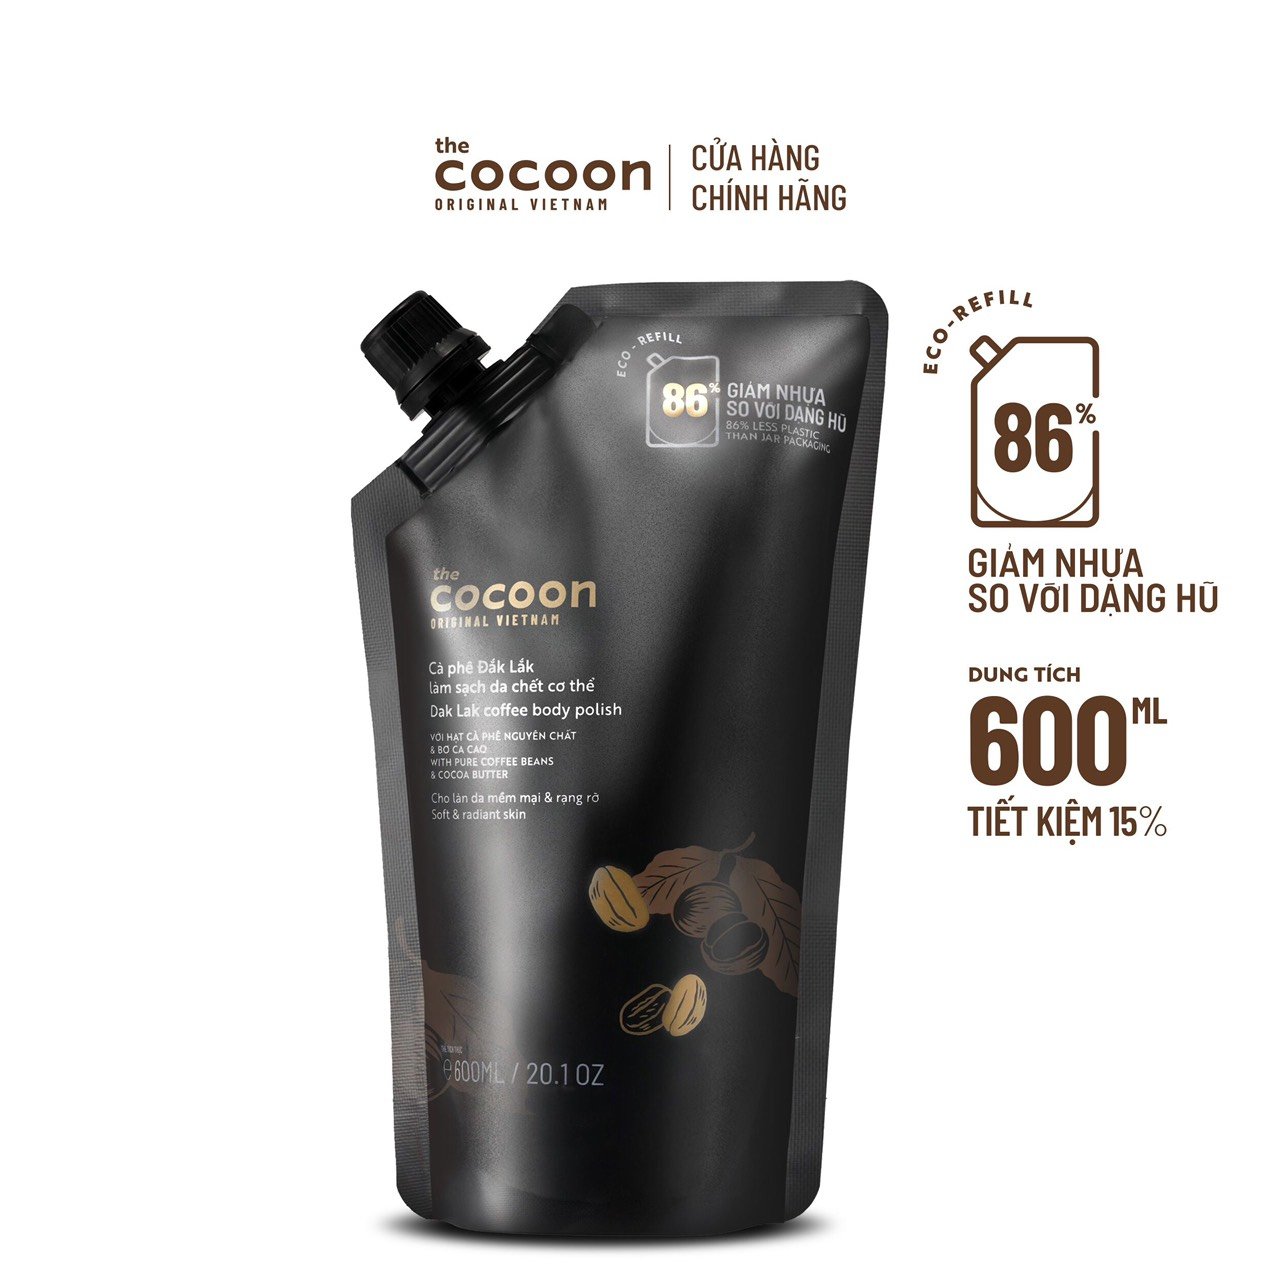 Túi Refill Cà phê Đắk Lắk làm sạch da chết cơ thể Cocoon cho làn da mềm